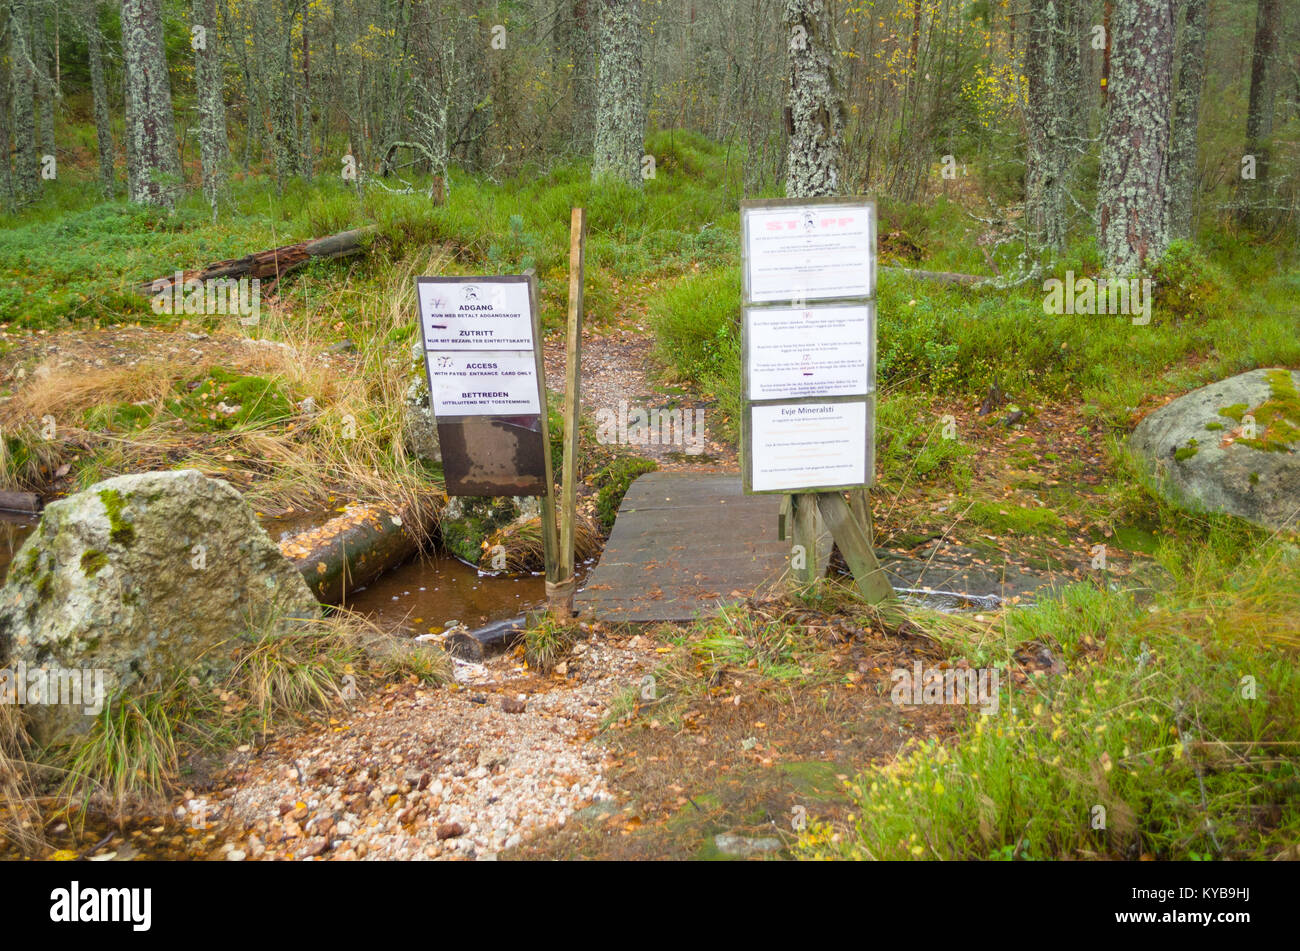 Eingang zum Lehrpfad rund um landsverk 1 in Evje Mineralsti - pensionierte Edelsteinmine und lokale touristische Attraktion. Stockfoto